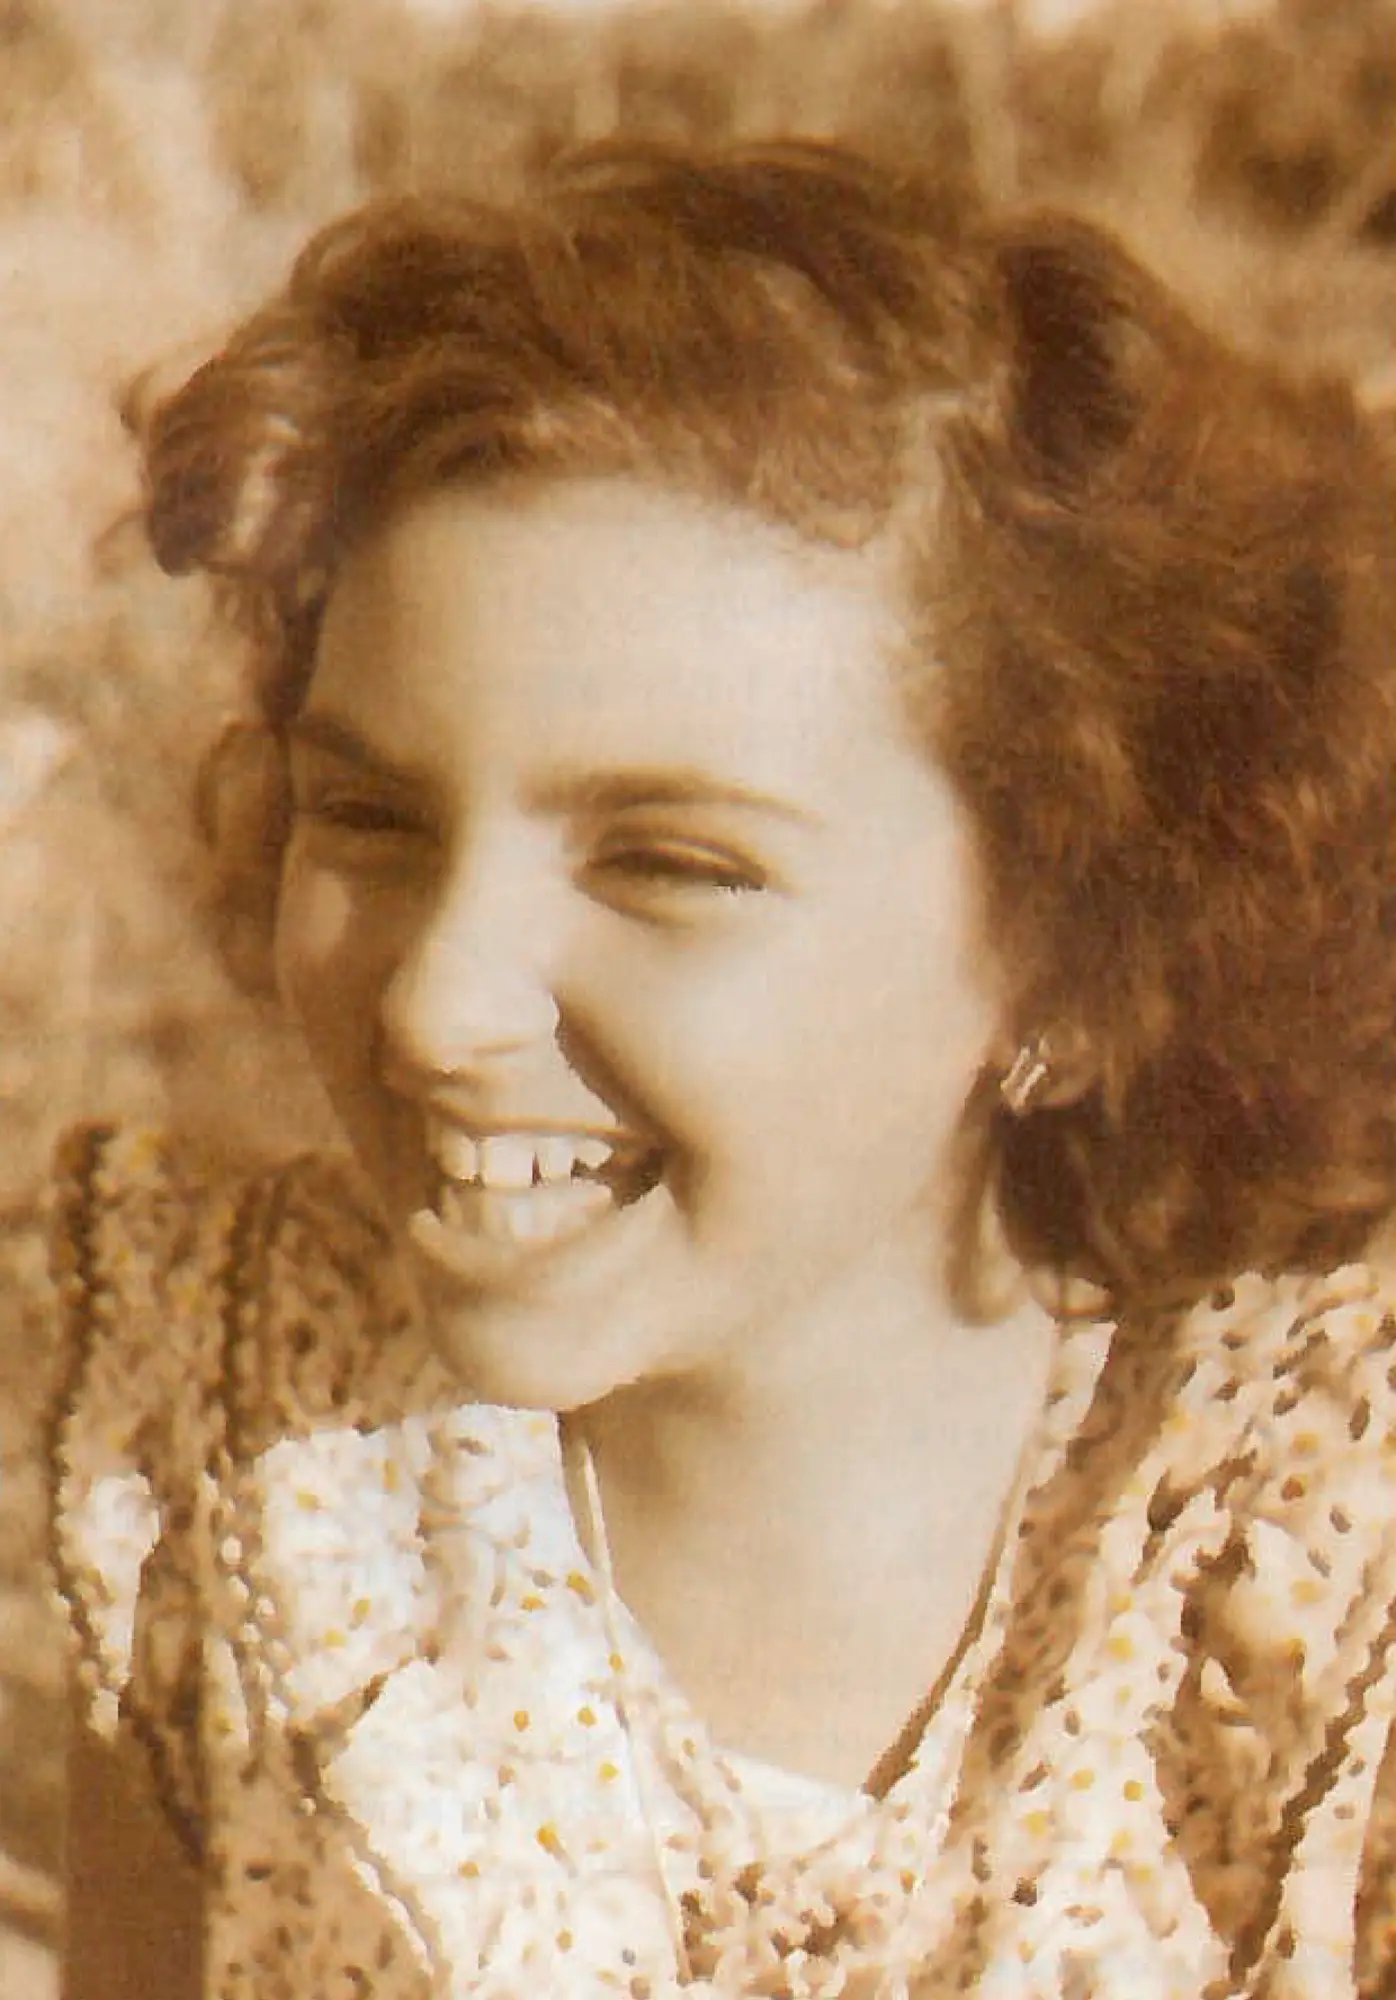 Com 22 anos vence no Verão de 1958 o concurso "Miss Piscina Praia", na Figueira da Foz